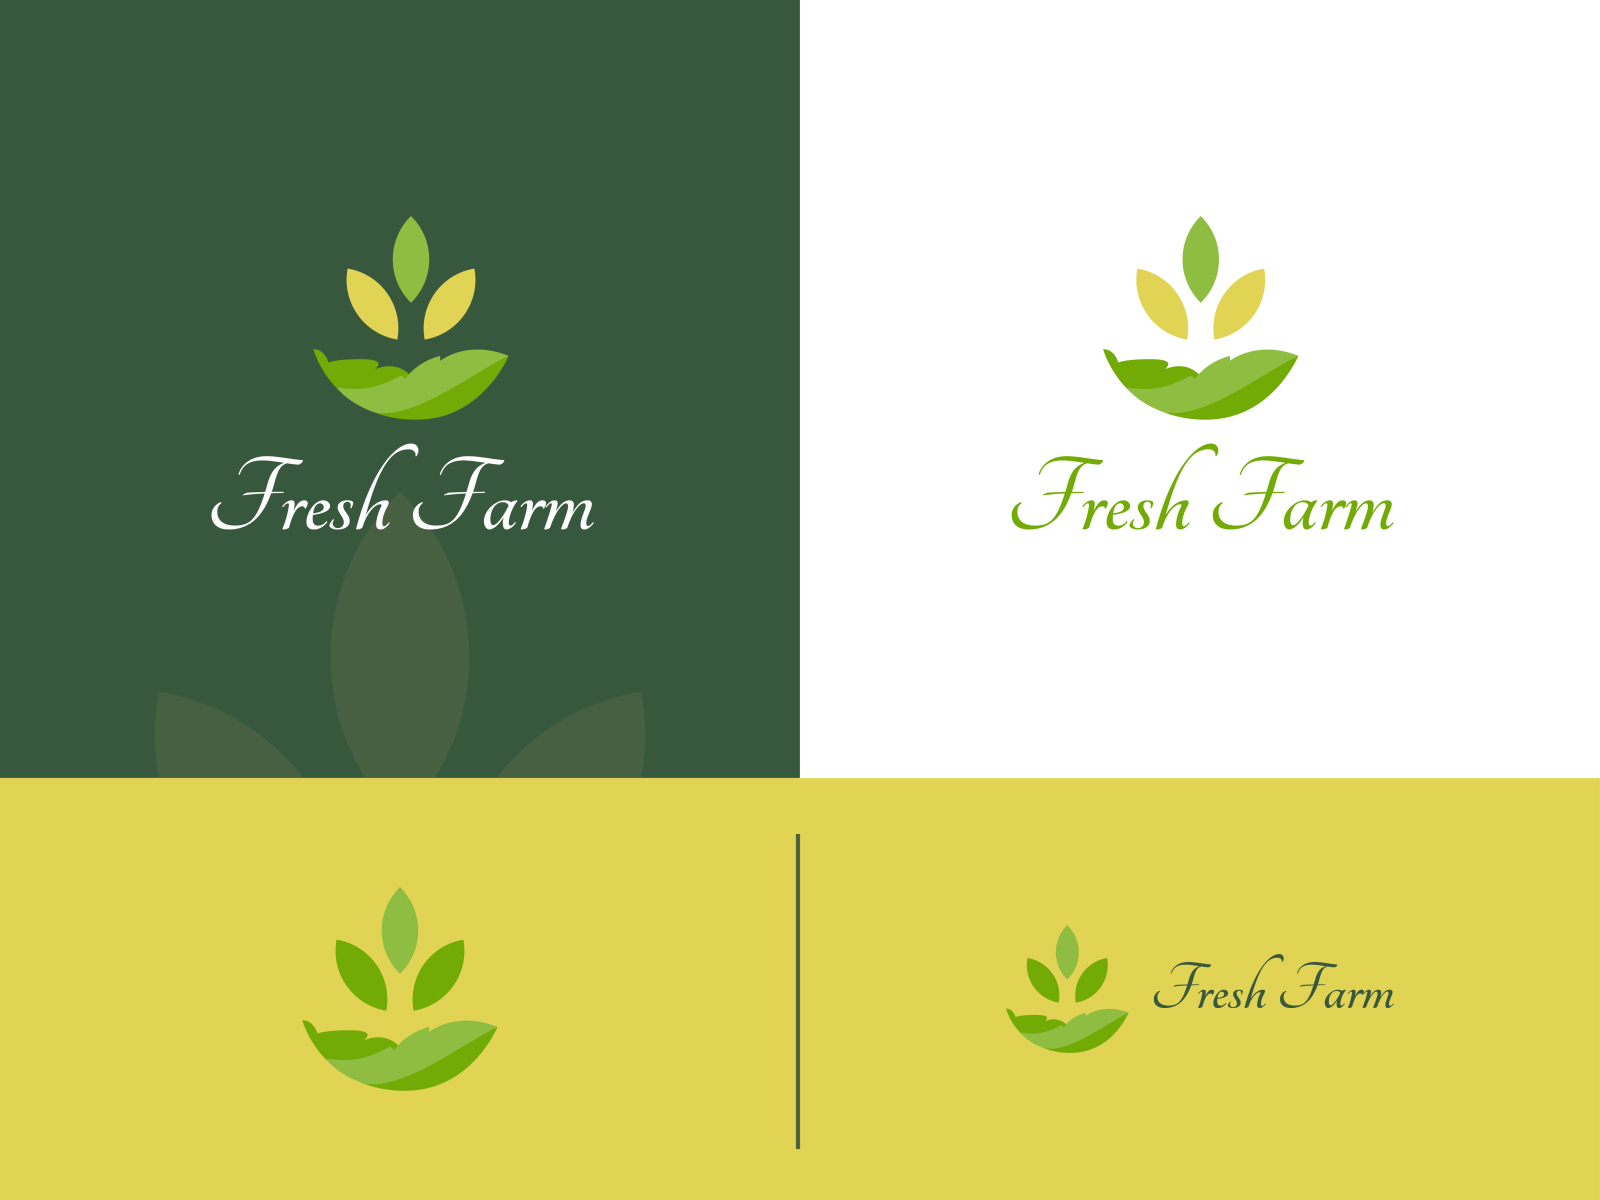 Fresh Farm Logo Design by Sohel Lab on Dribbble